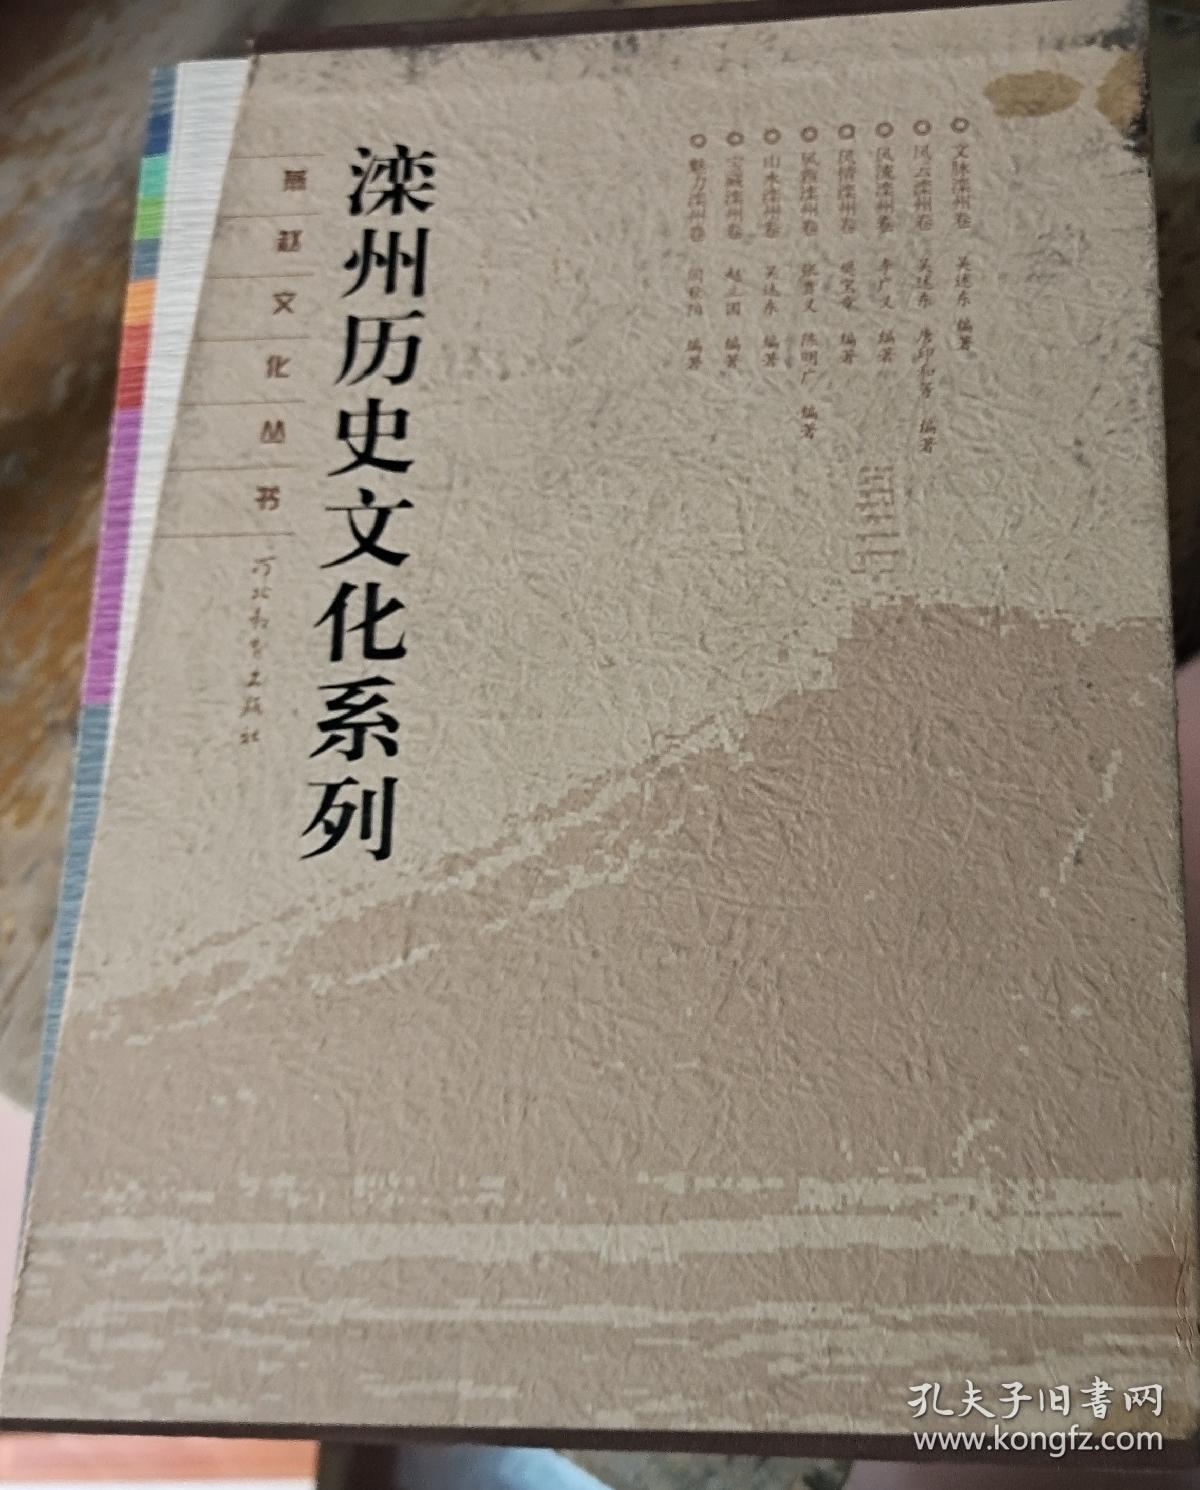 燕赵文化丛书。滦州历史文化系列，一套8册